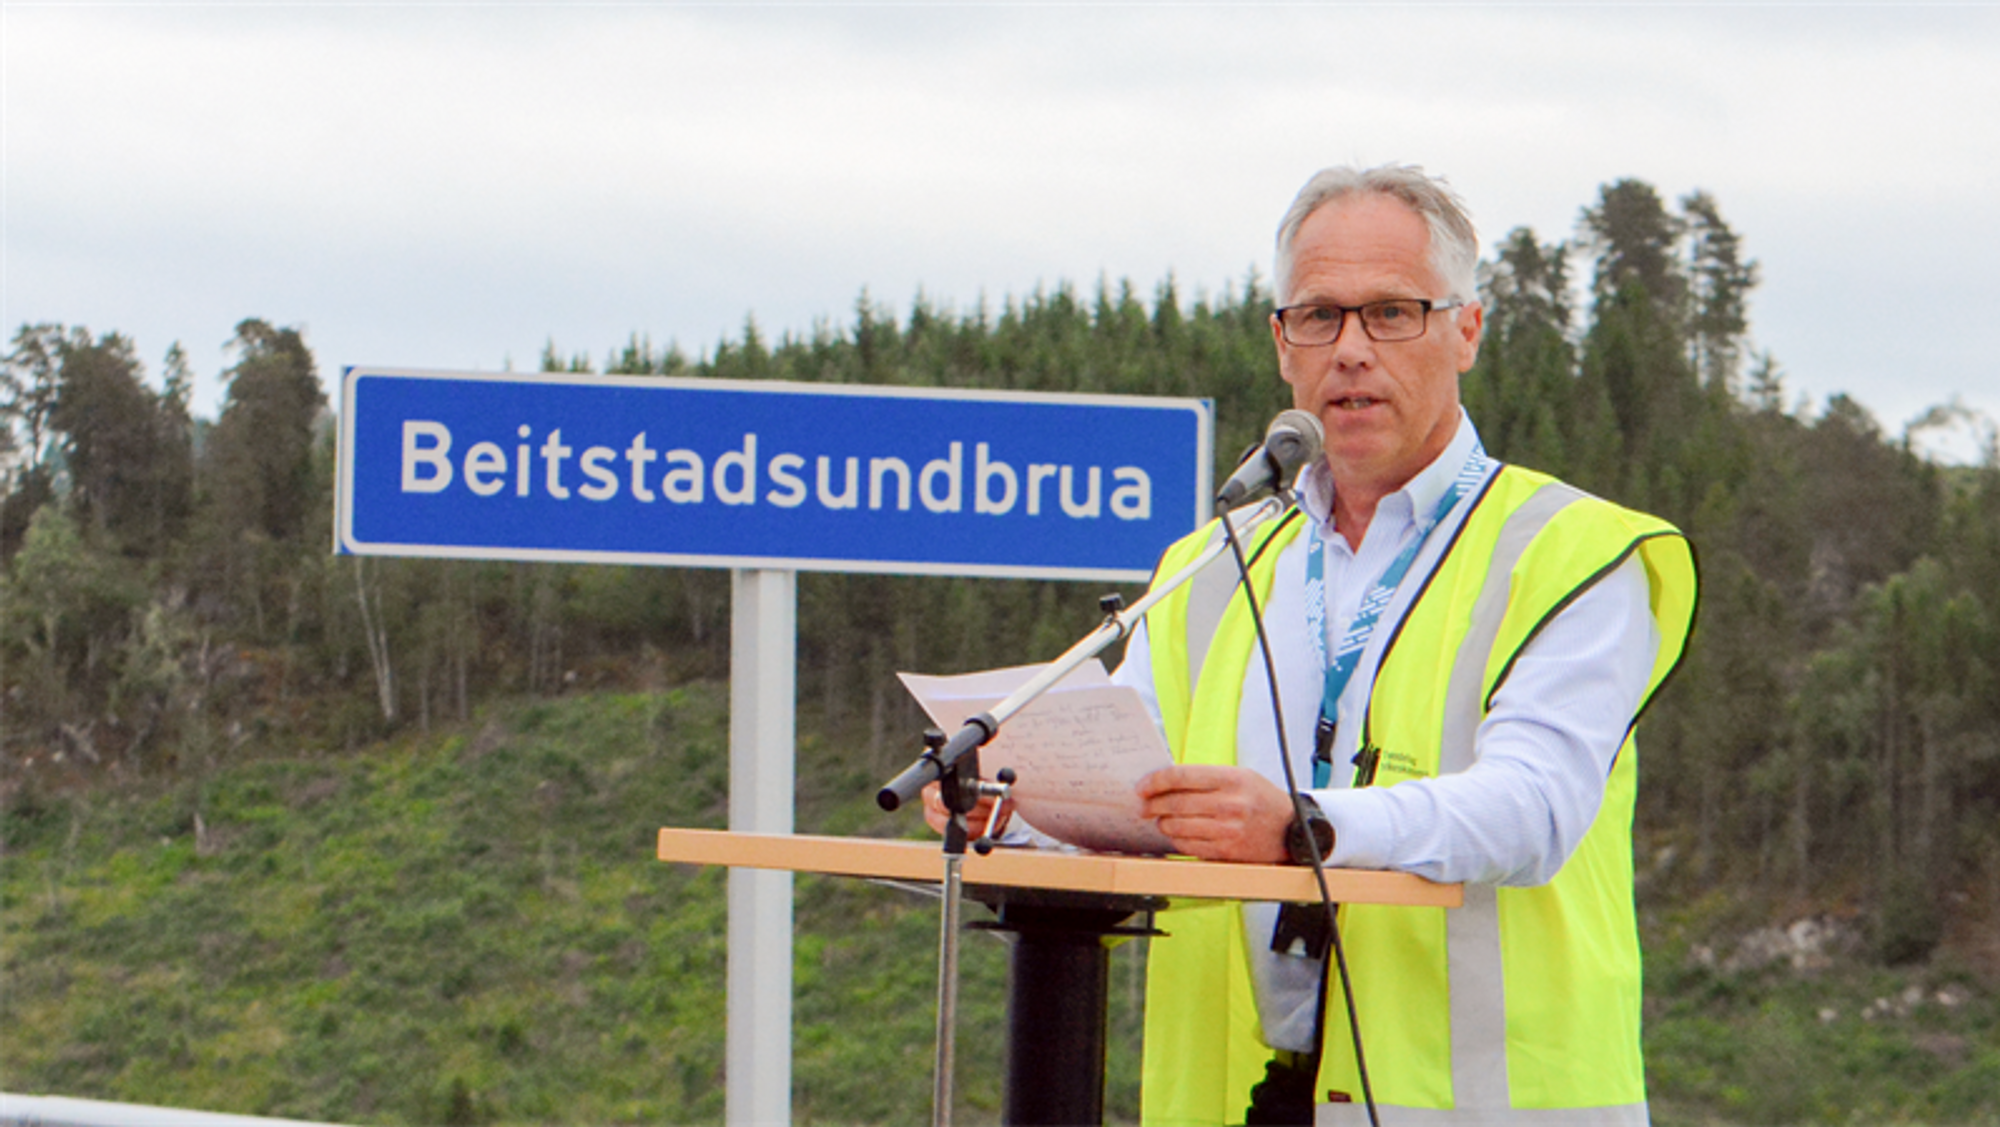 Jo Bernt Brønstad har over 30 års erfaring i ulike vegfaglige stillinger i Statens vegvesen